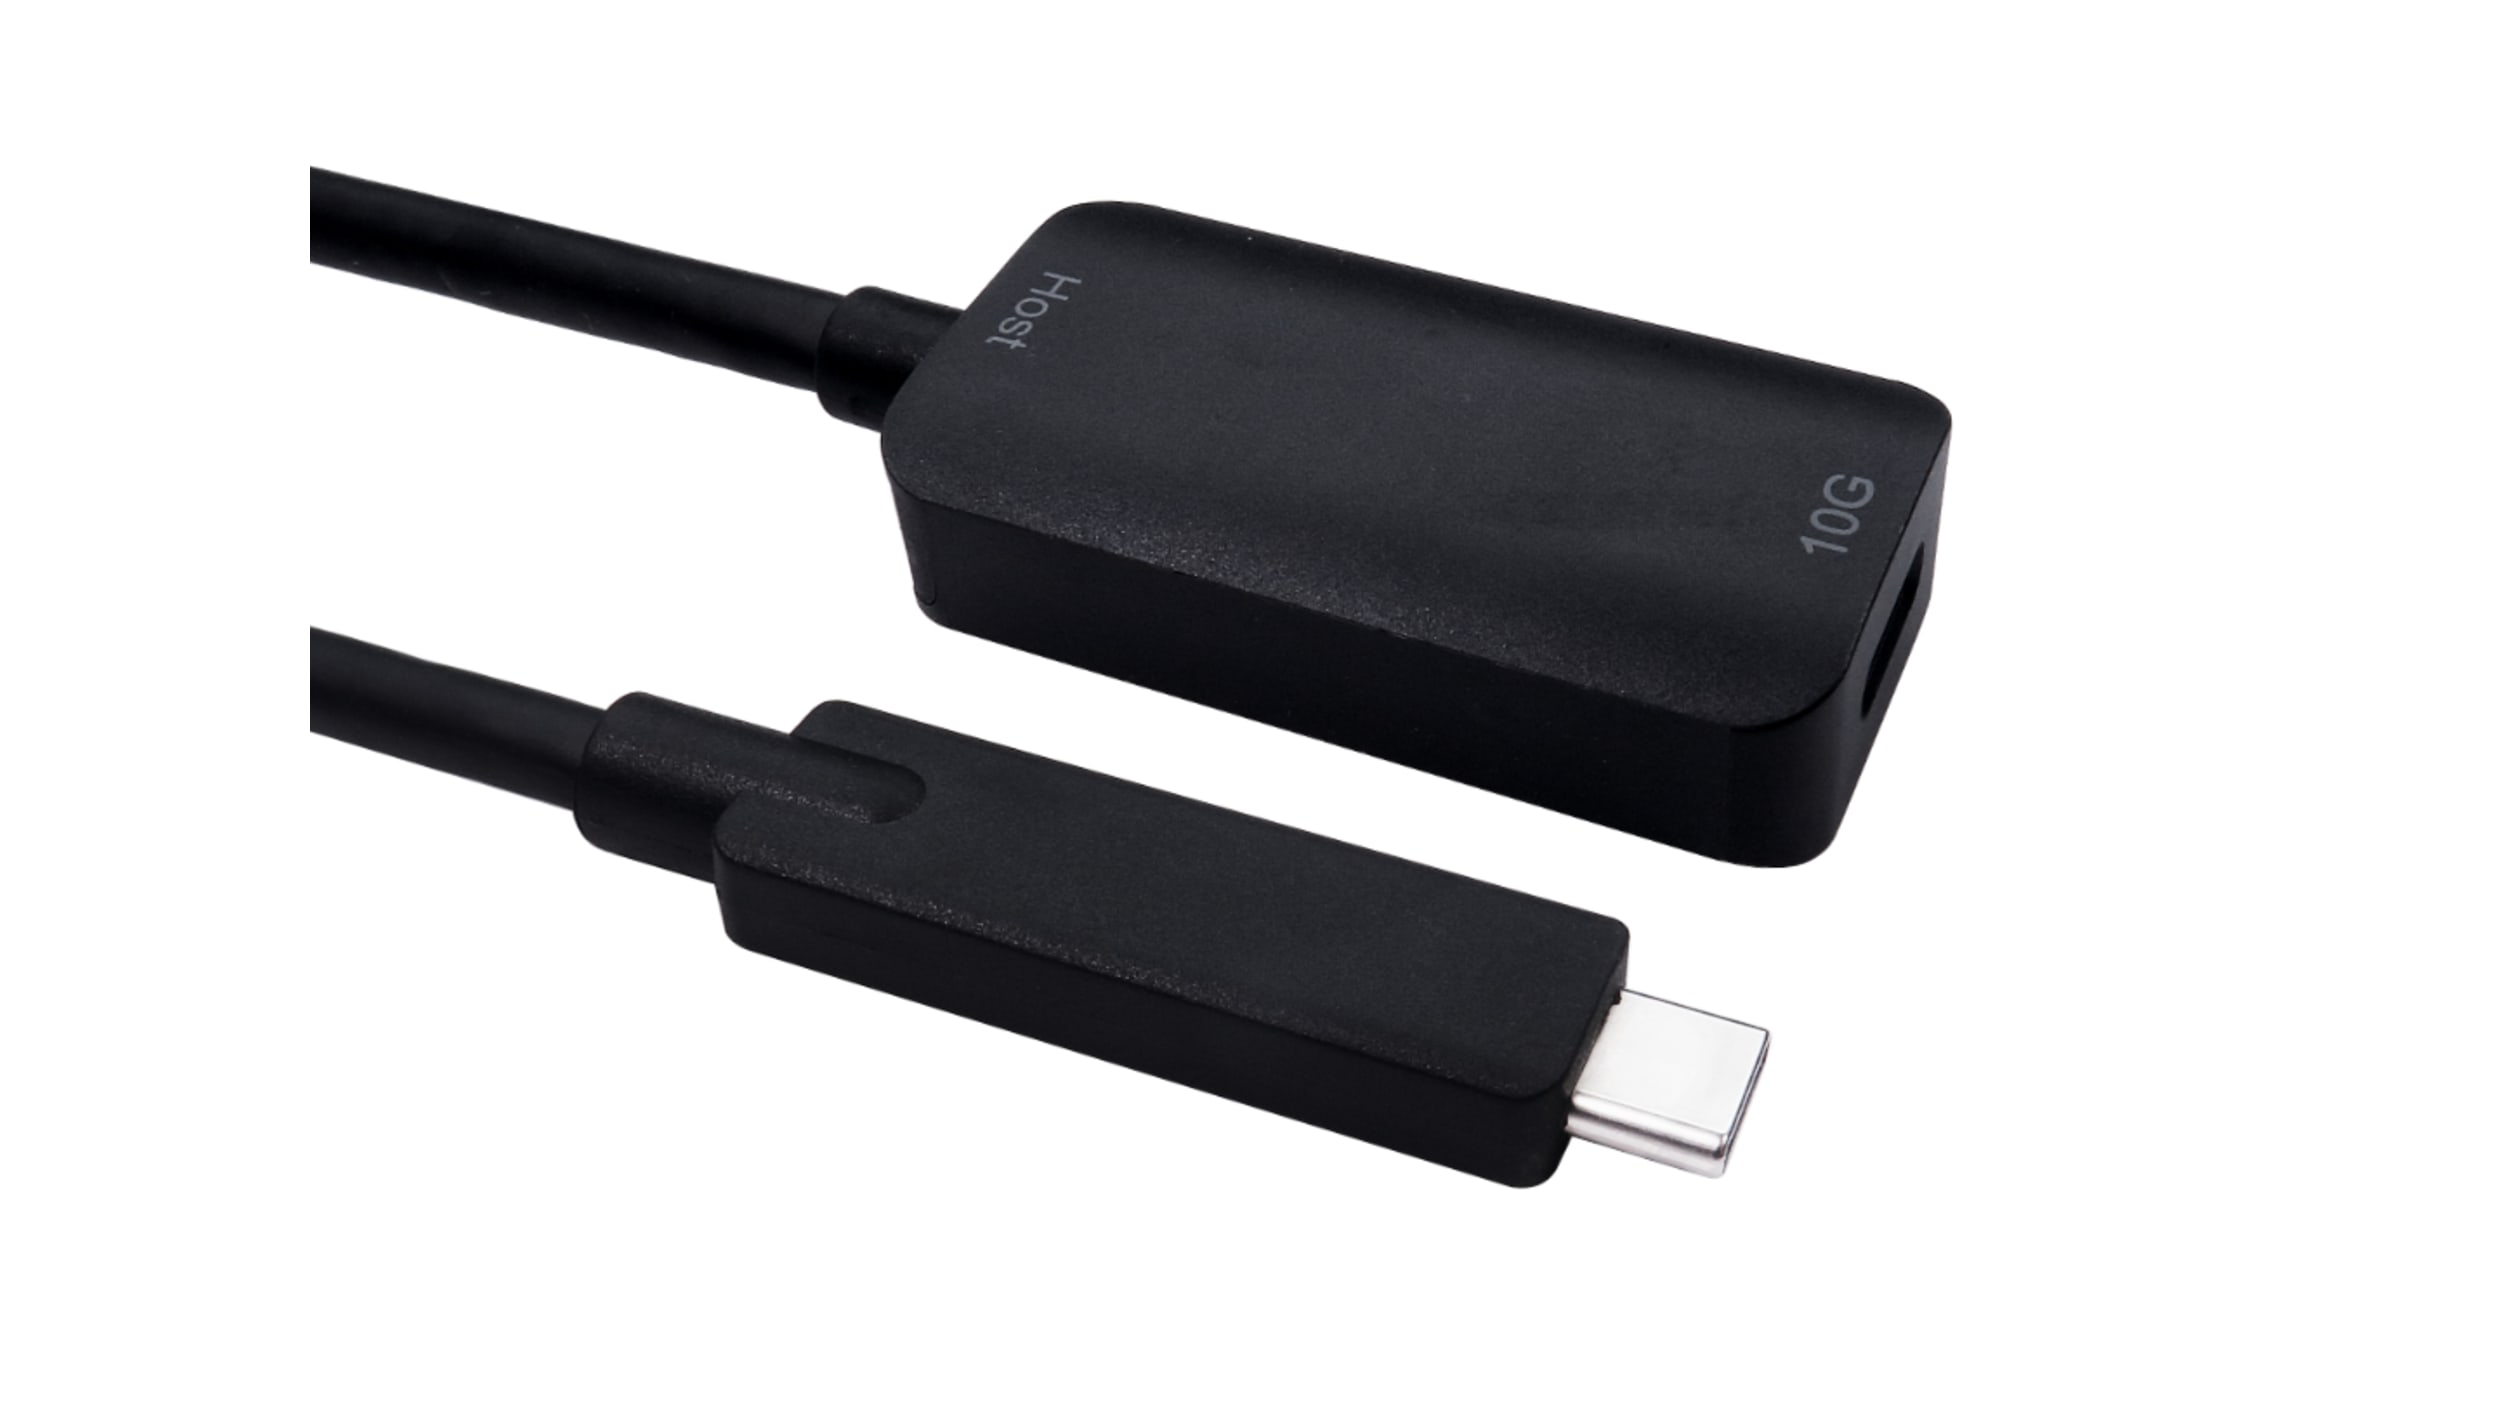 Cable alargador USB NewLink NLUSB3C-EXT5M, , 1 puerto